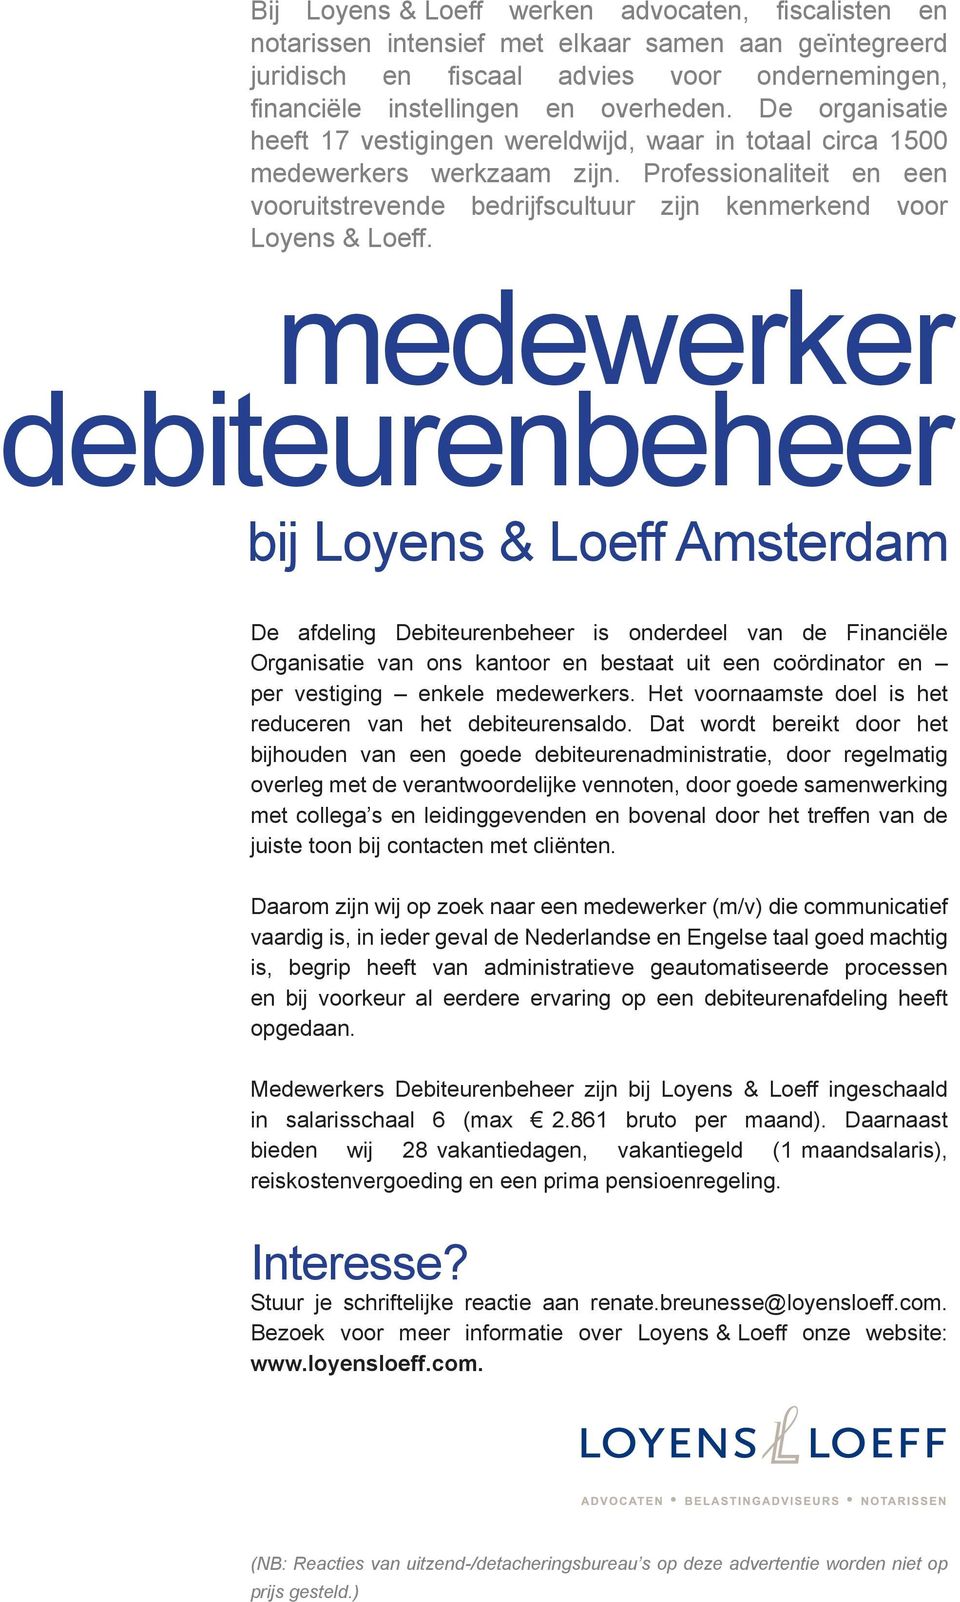 medewerker debiteurenbeheer bij Loyens & Loeff Amsterdam De afdeling Debiteurenbeheer is onderdeel van de Financiële Organisatie van ons kantoor en bestaat uit een coördinator en per vestiging enkele